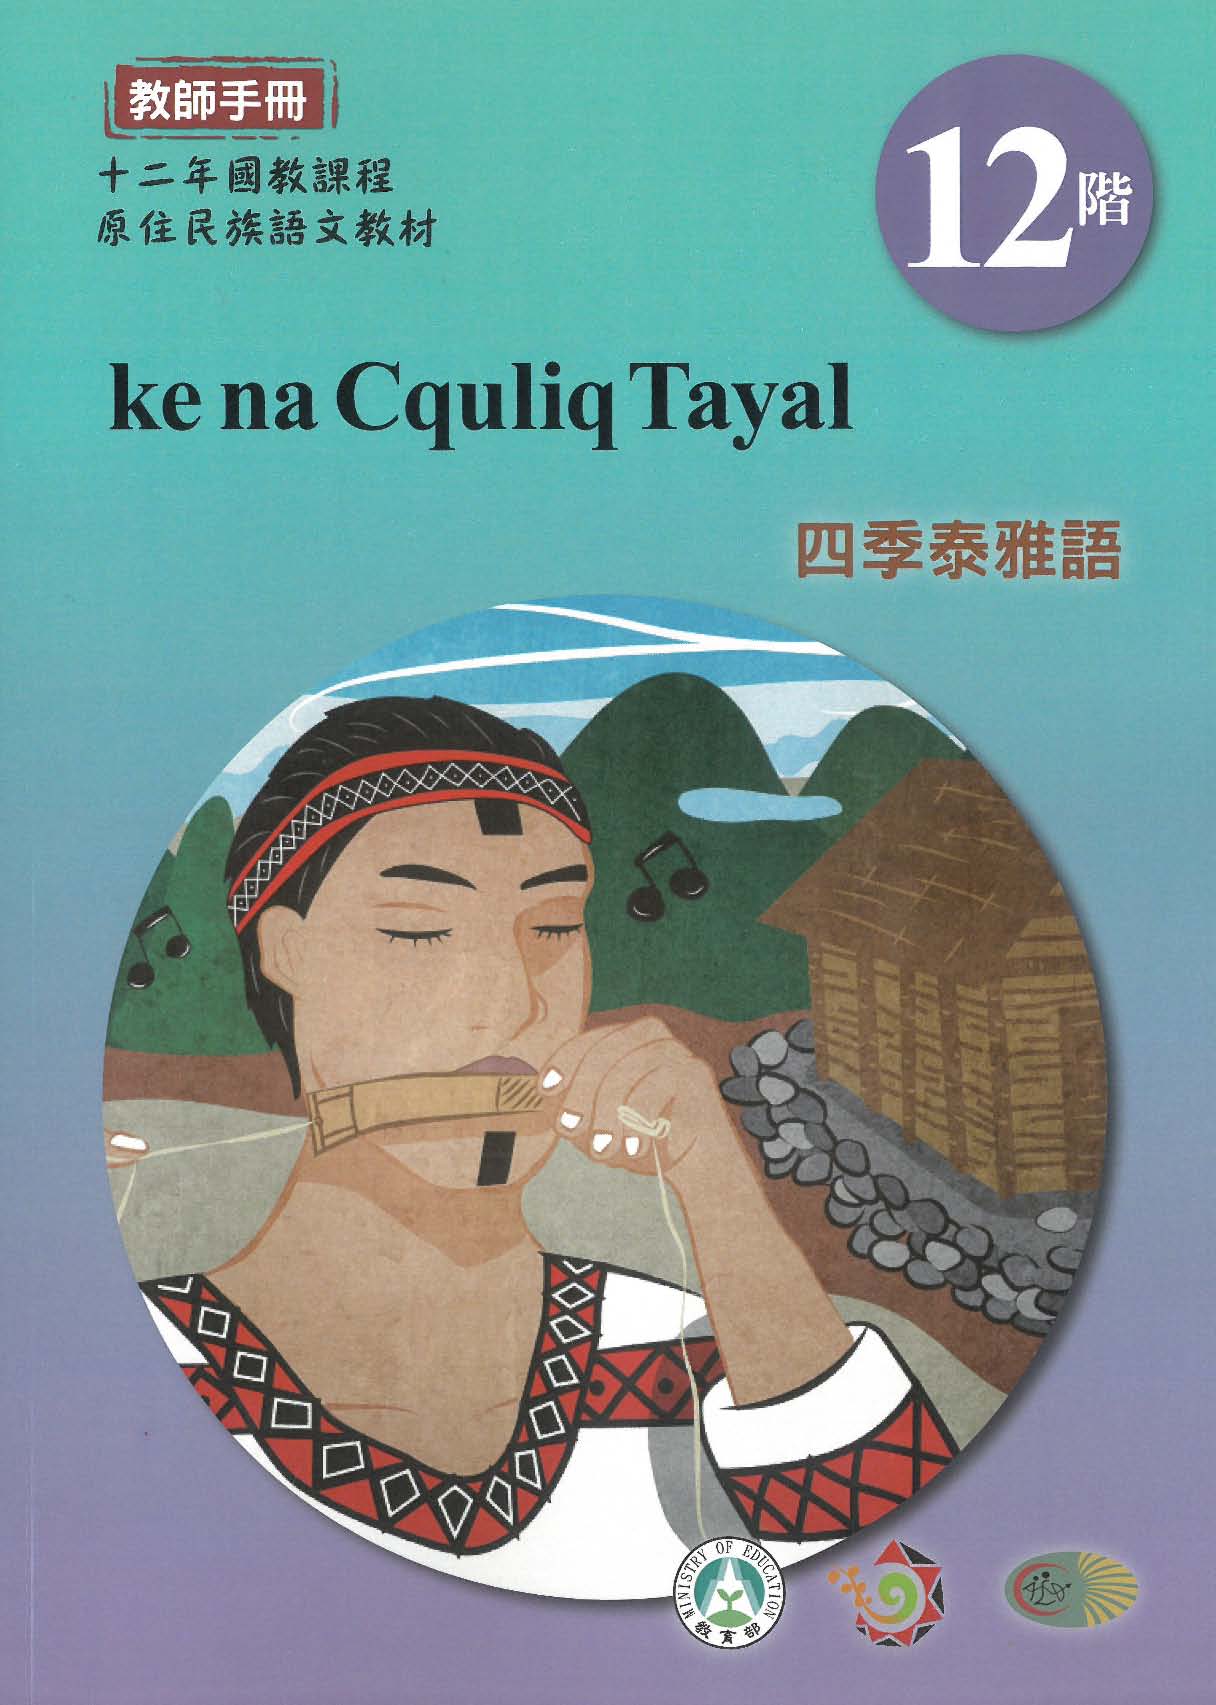 十二年國教原住民族語文教材 四季泰雅語 教師手冊 第12階